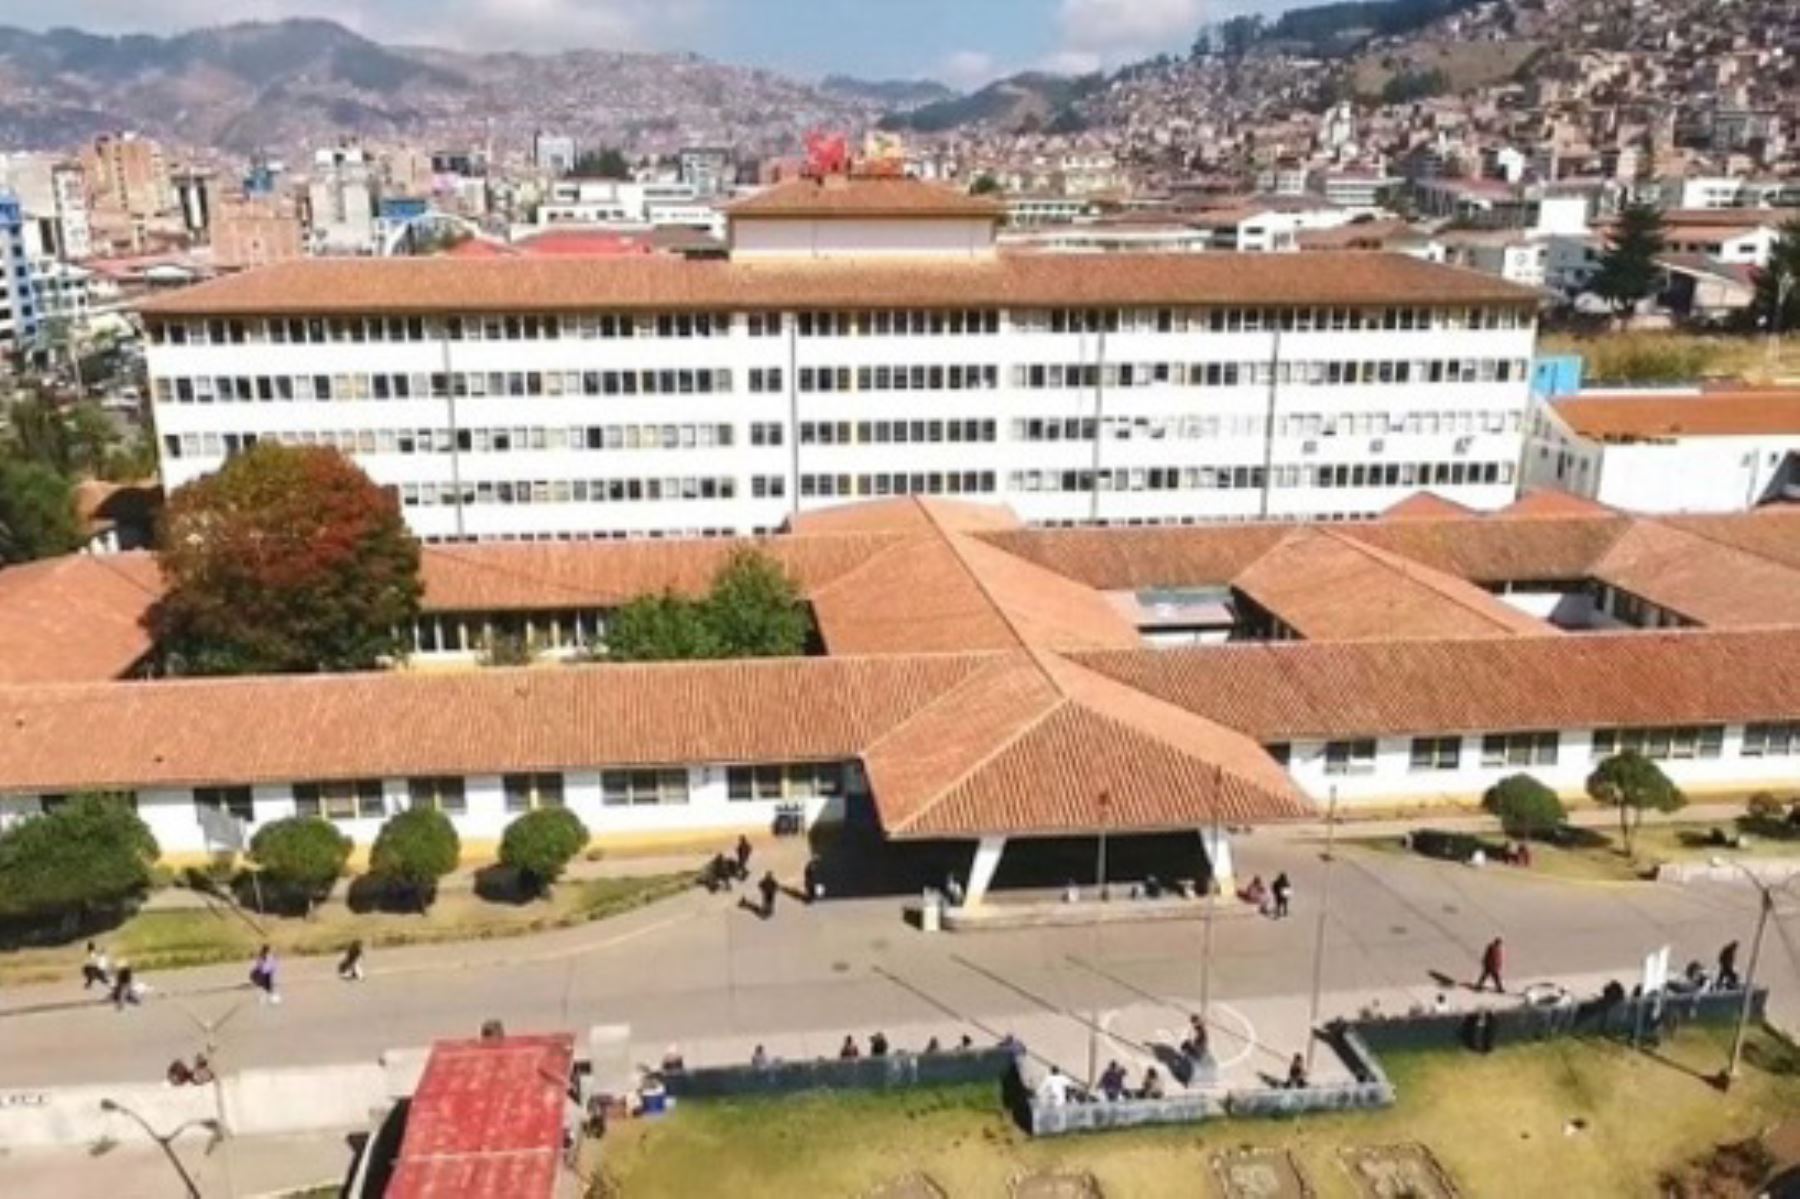 El Ministerio de Salud (Minsa), ejecutará un total de 34 proyectos de inversión por el monto de 1,799 millones de soles en la región Cusco, para mejorar la oferta y servicios de salud para el beneficio de la población cusqueña, informó la ministra de Salud, Elizabeth Hinostroza Pereyra.